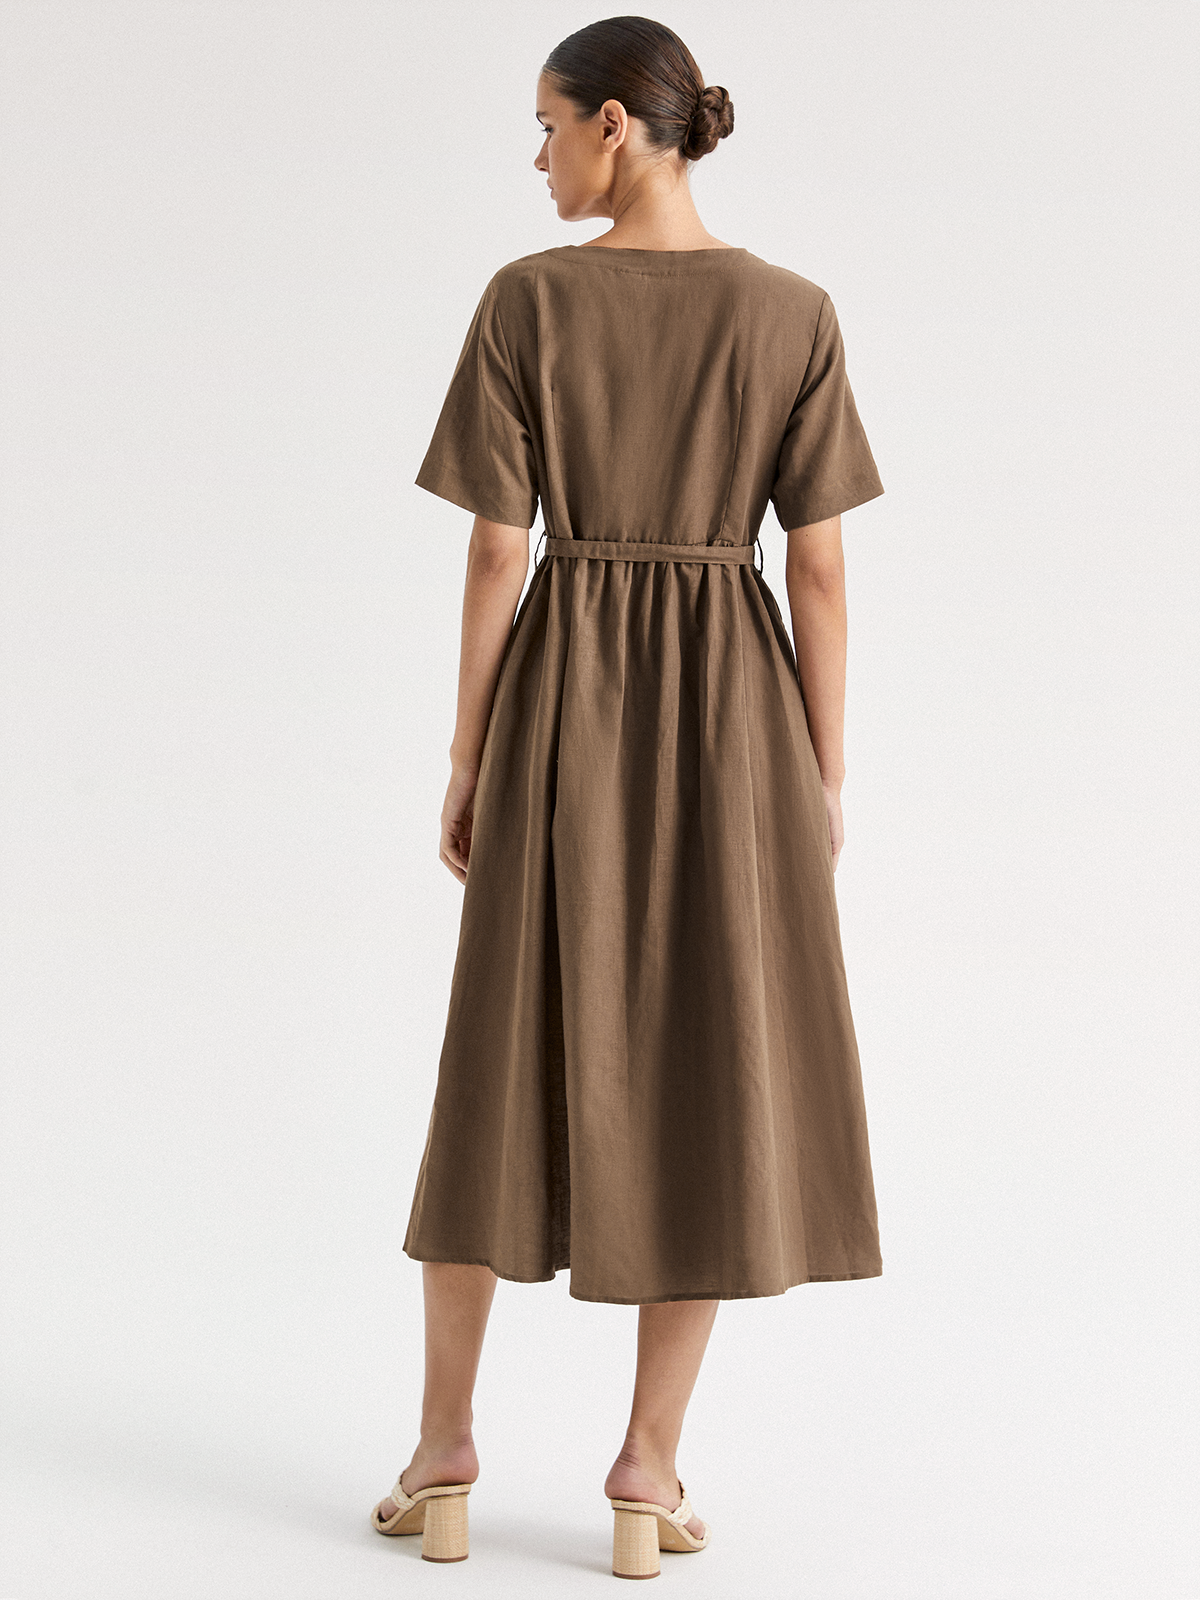 Elowen Linen-Cotton Plain Dress With Belt